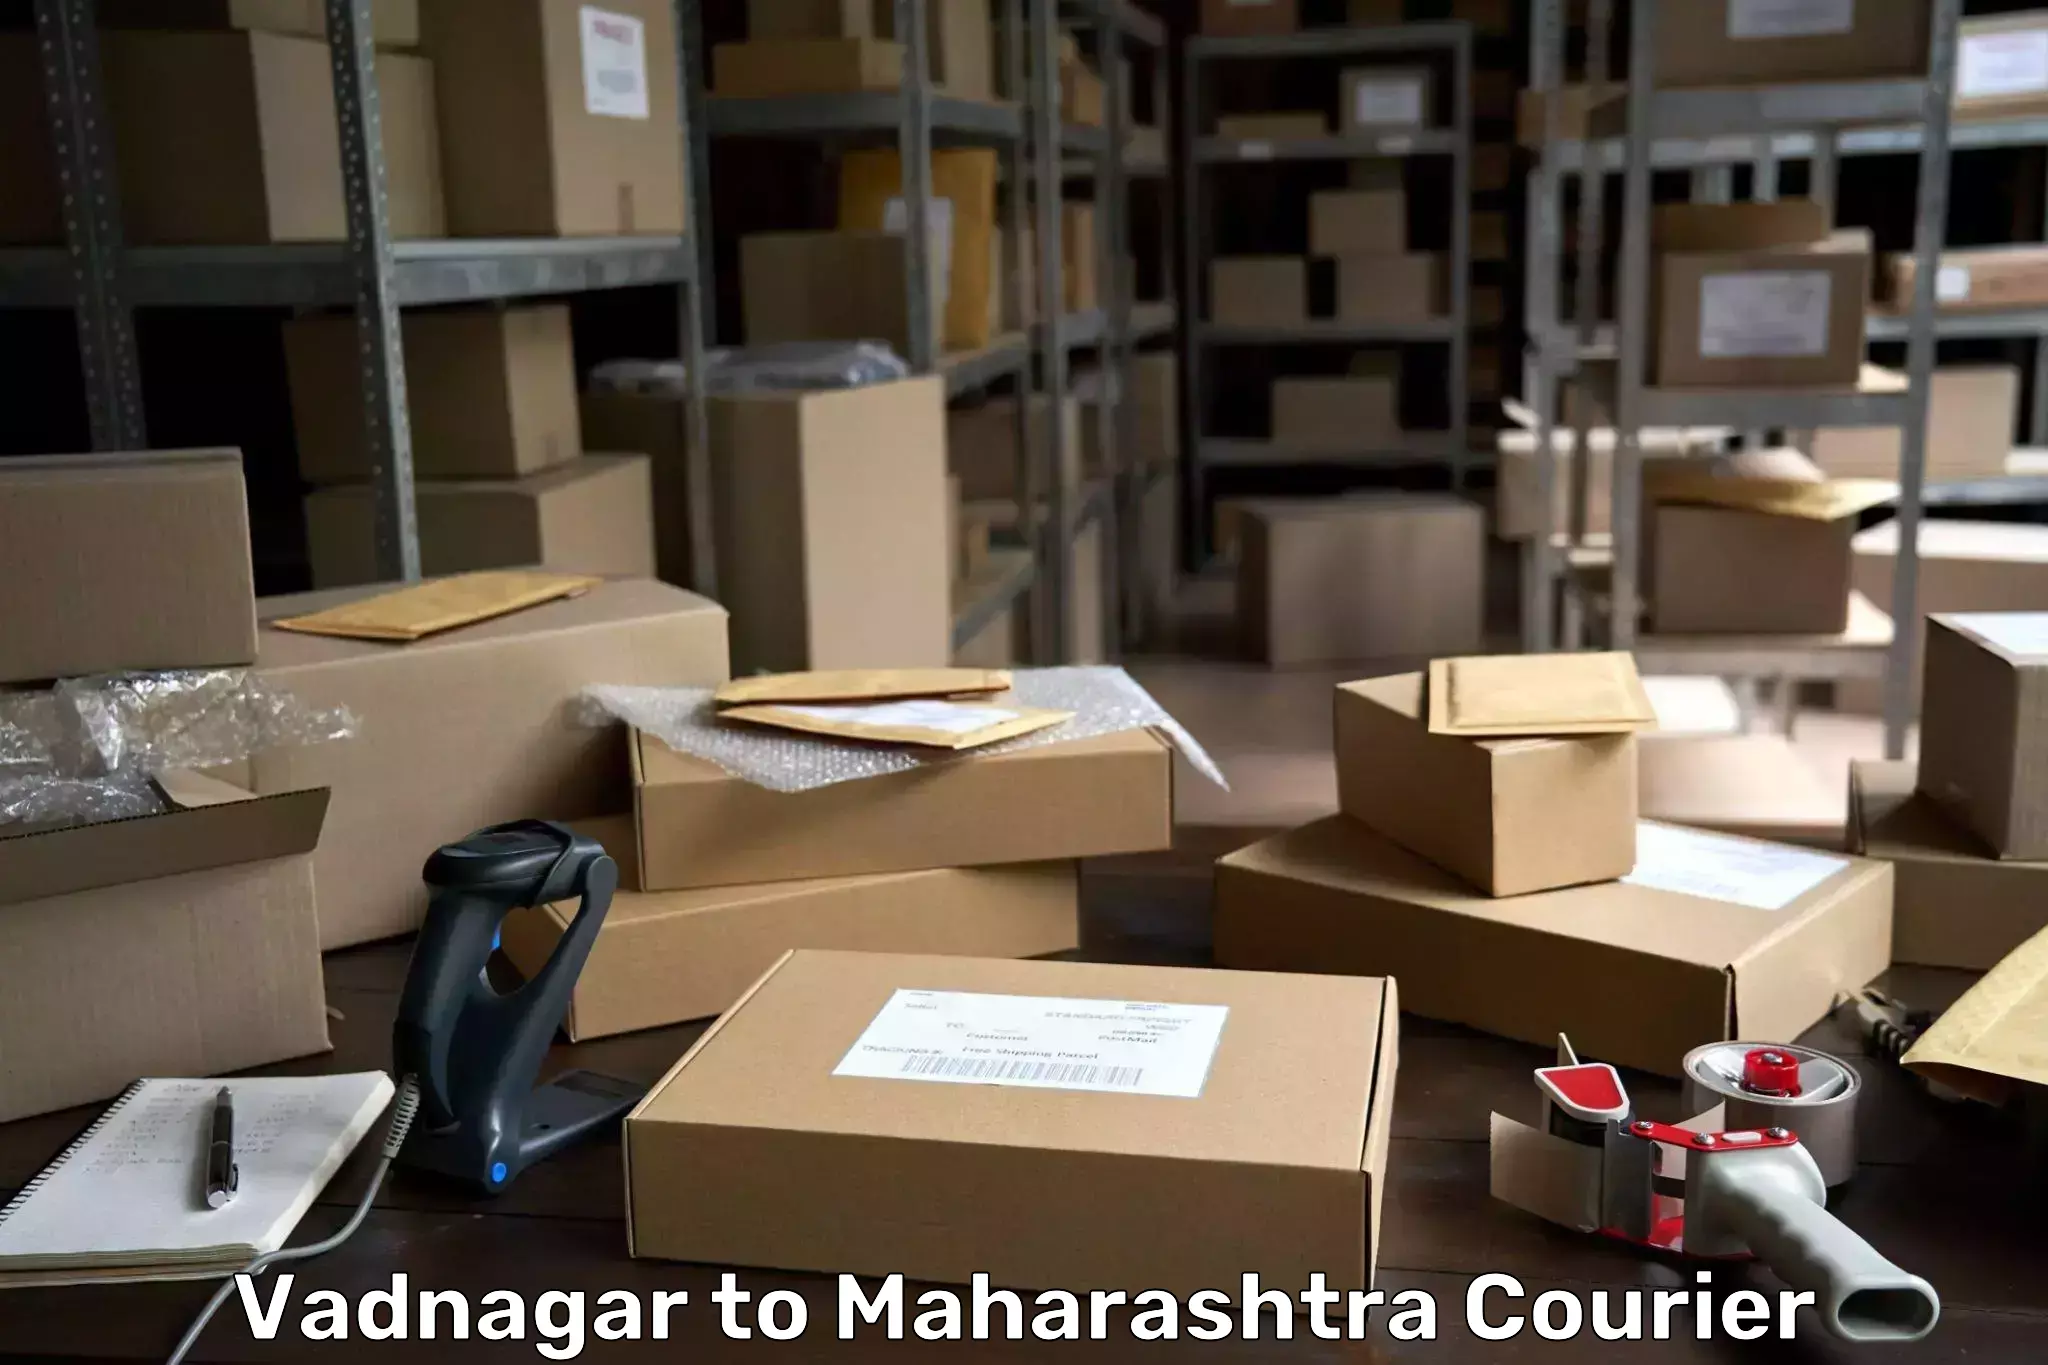 Cargo courier service Vadnagar to Jawaharlal Nehru Port Nhava Sheva